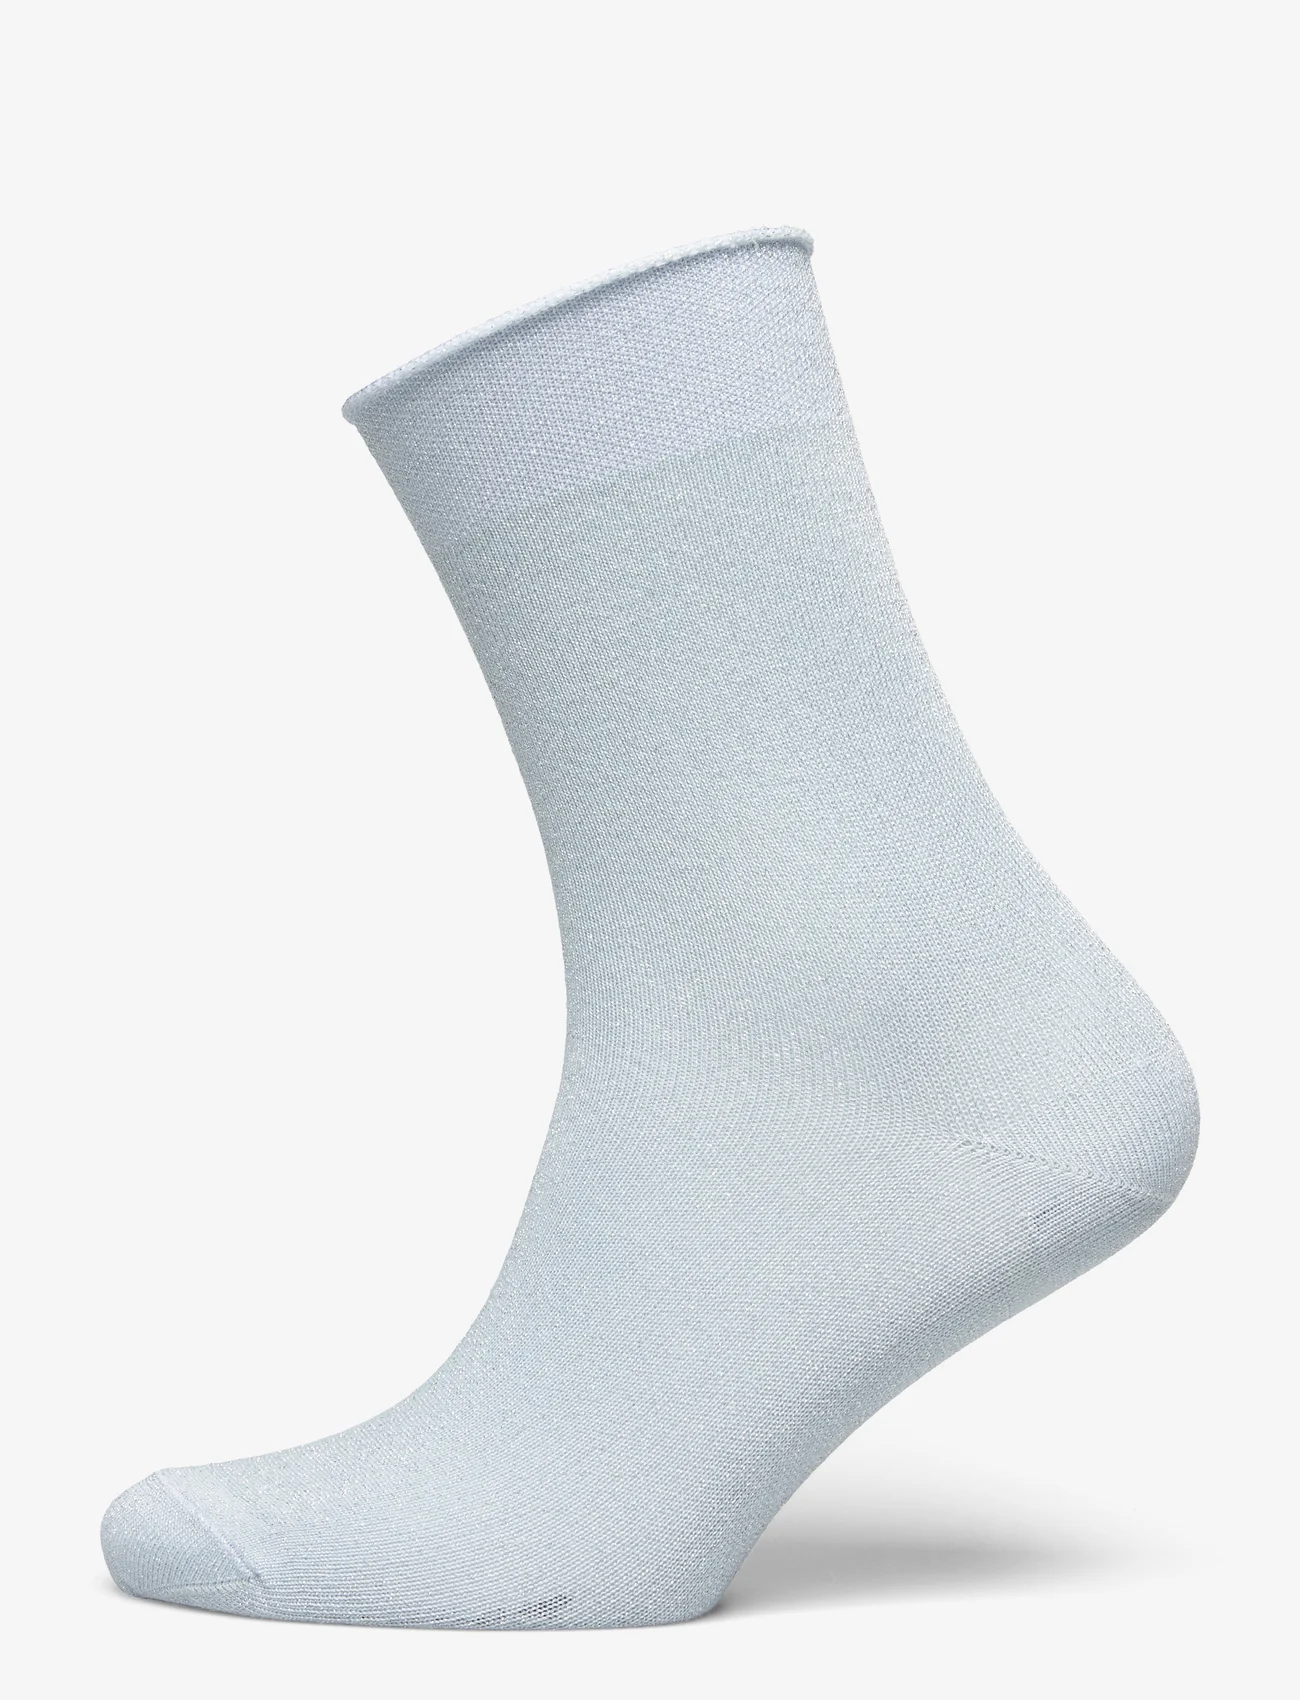 mp Denmark - Lucinda socks - die niedrigsten preise - winter sky - 0